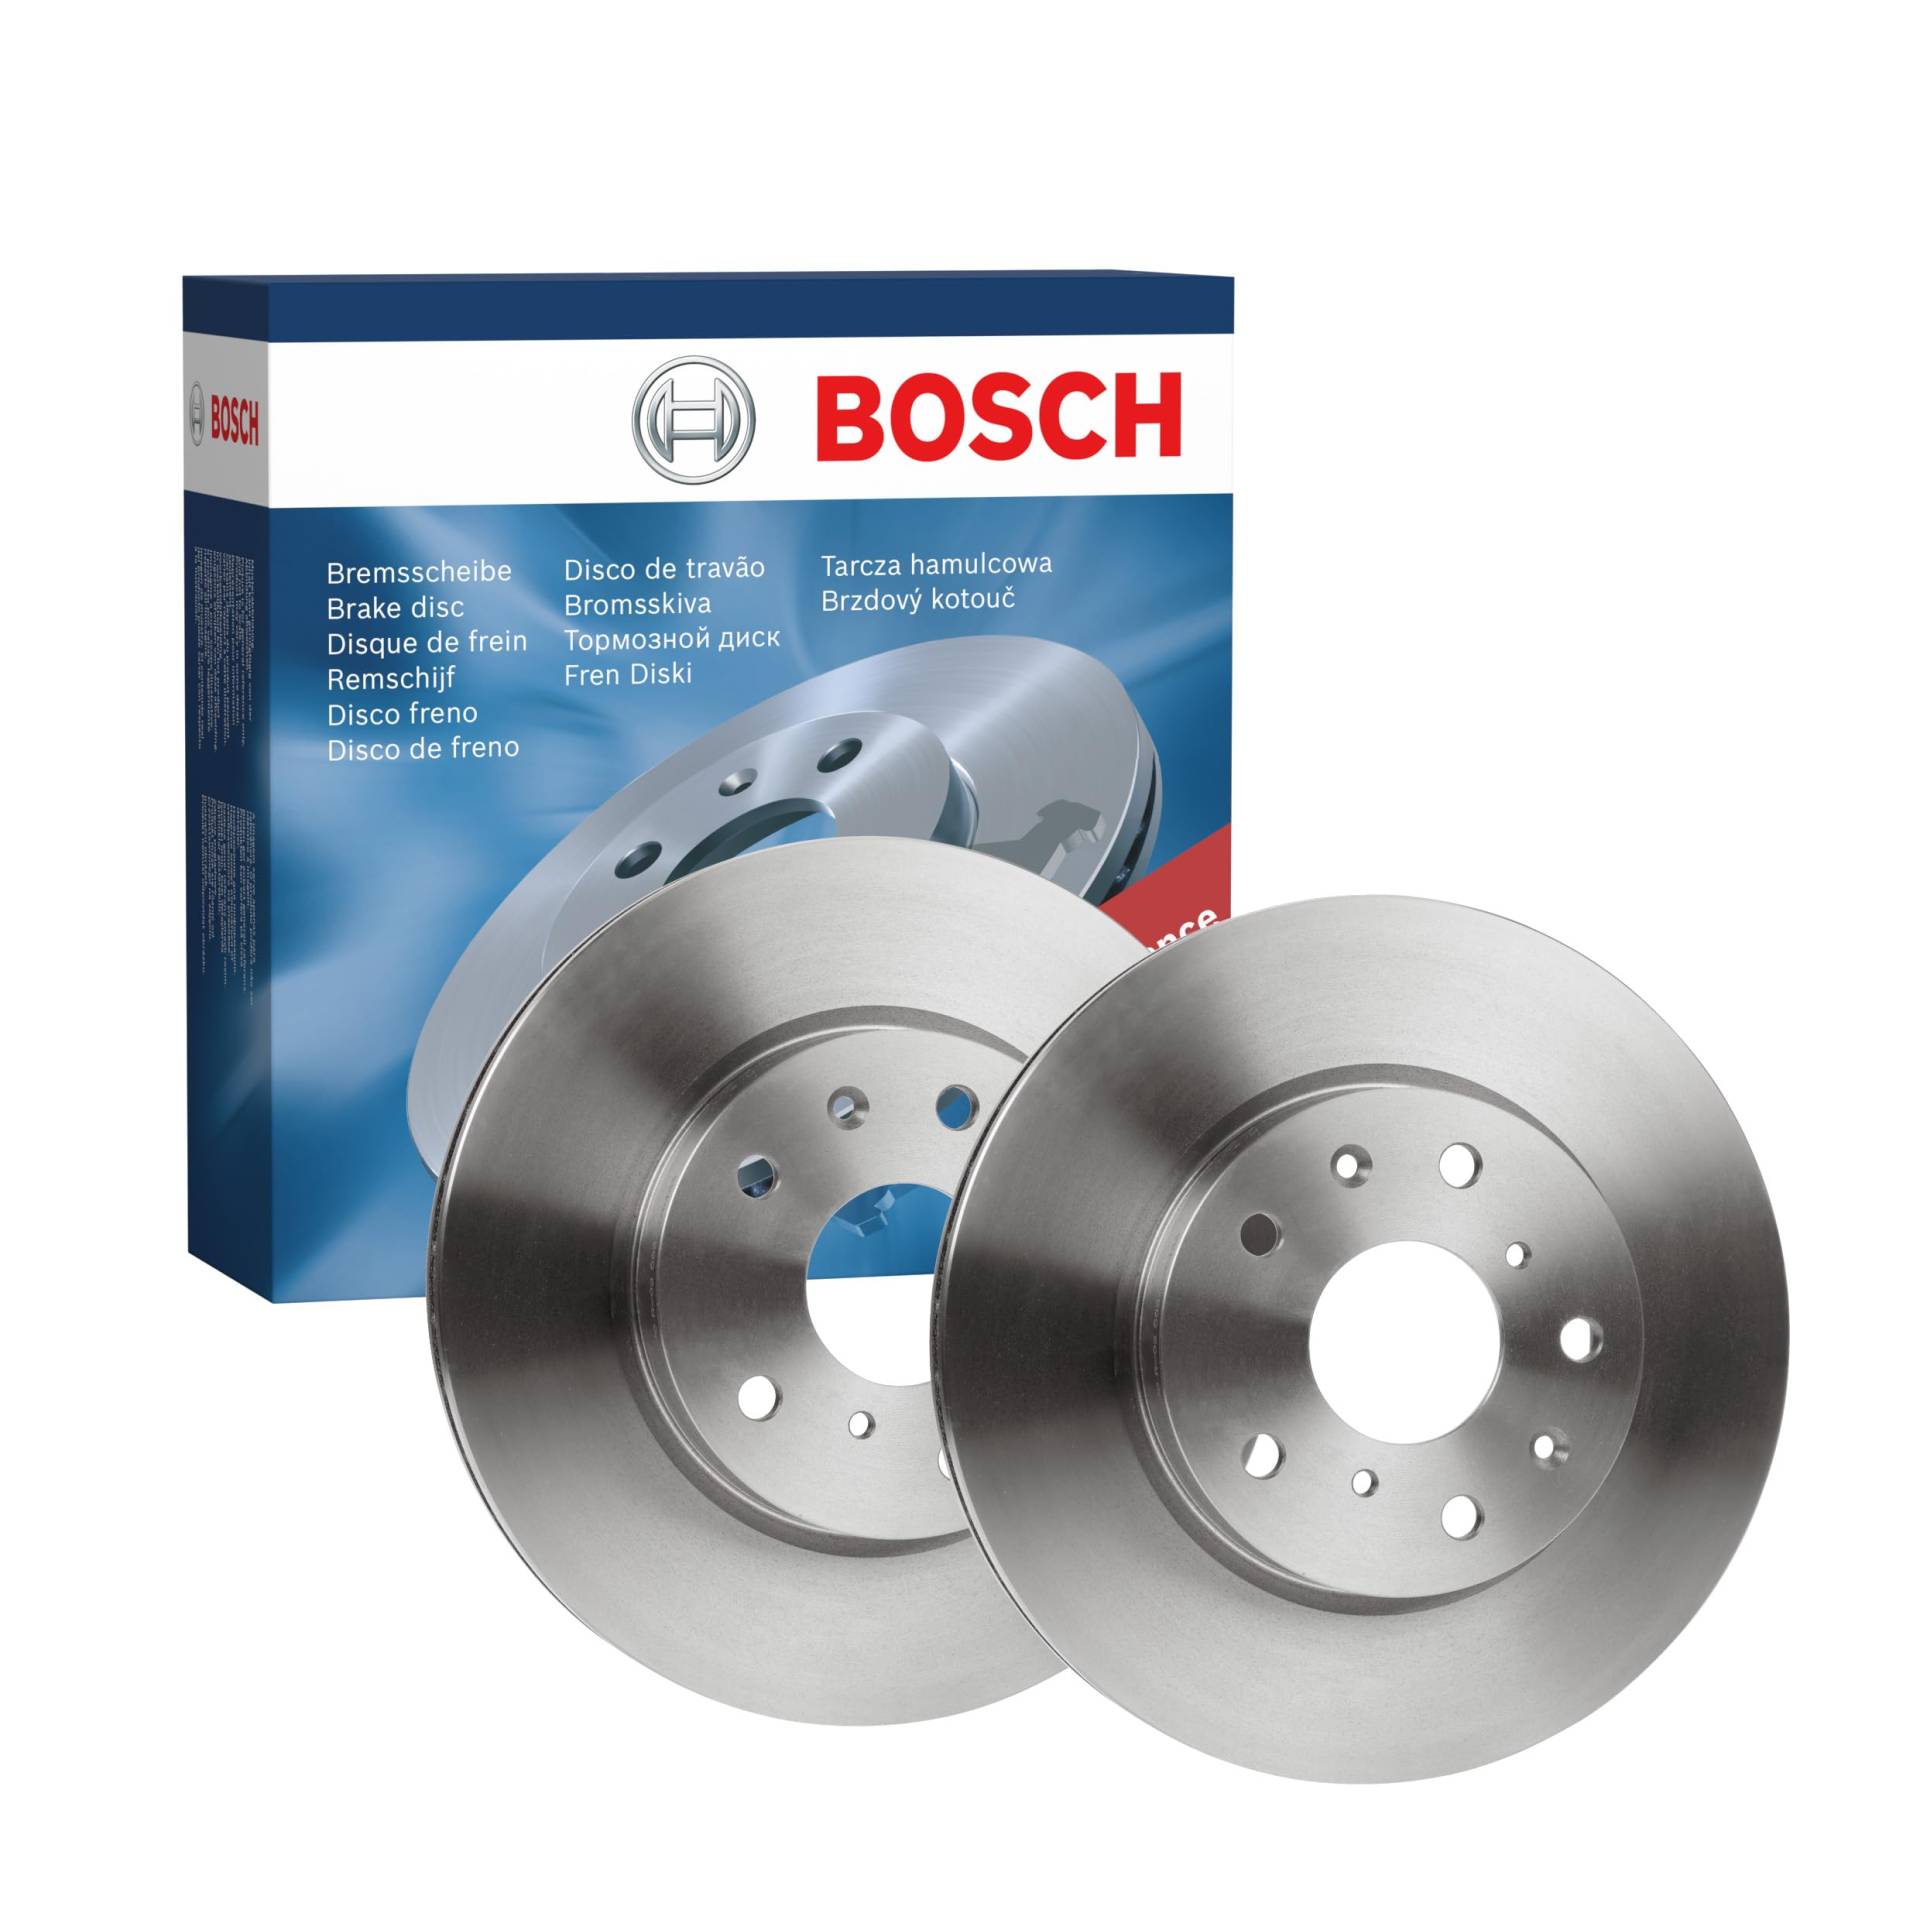 Bosch BD1945 Bremsscheiben - Vorderachse - ECE-R90 Zertifizierung - zwei Bremsscheiben pro Set von Bosch Automotive